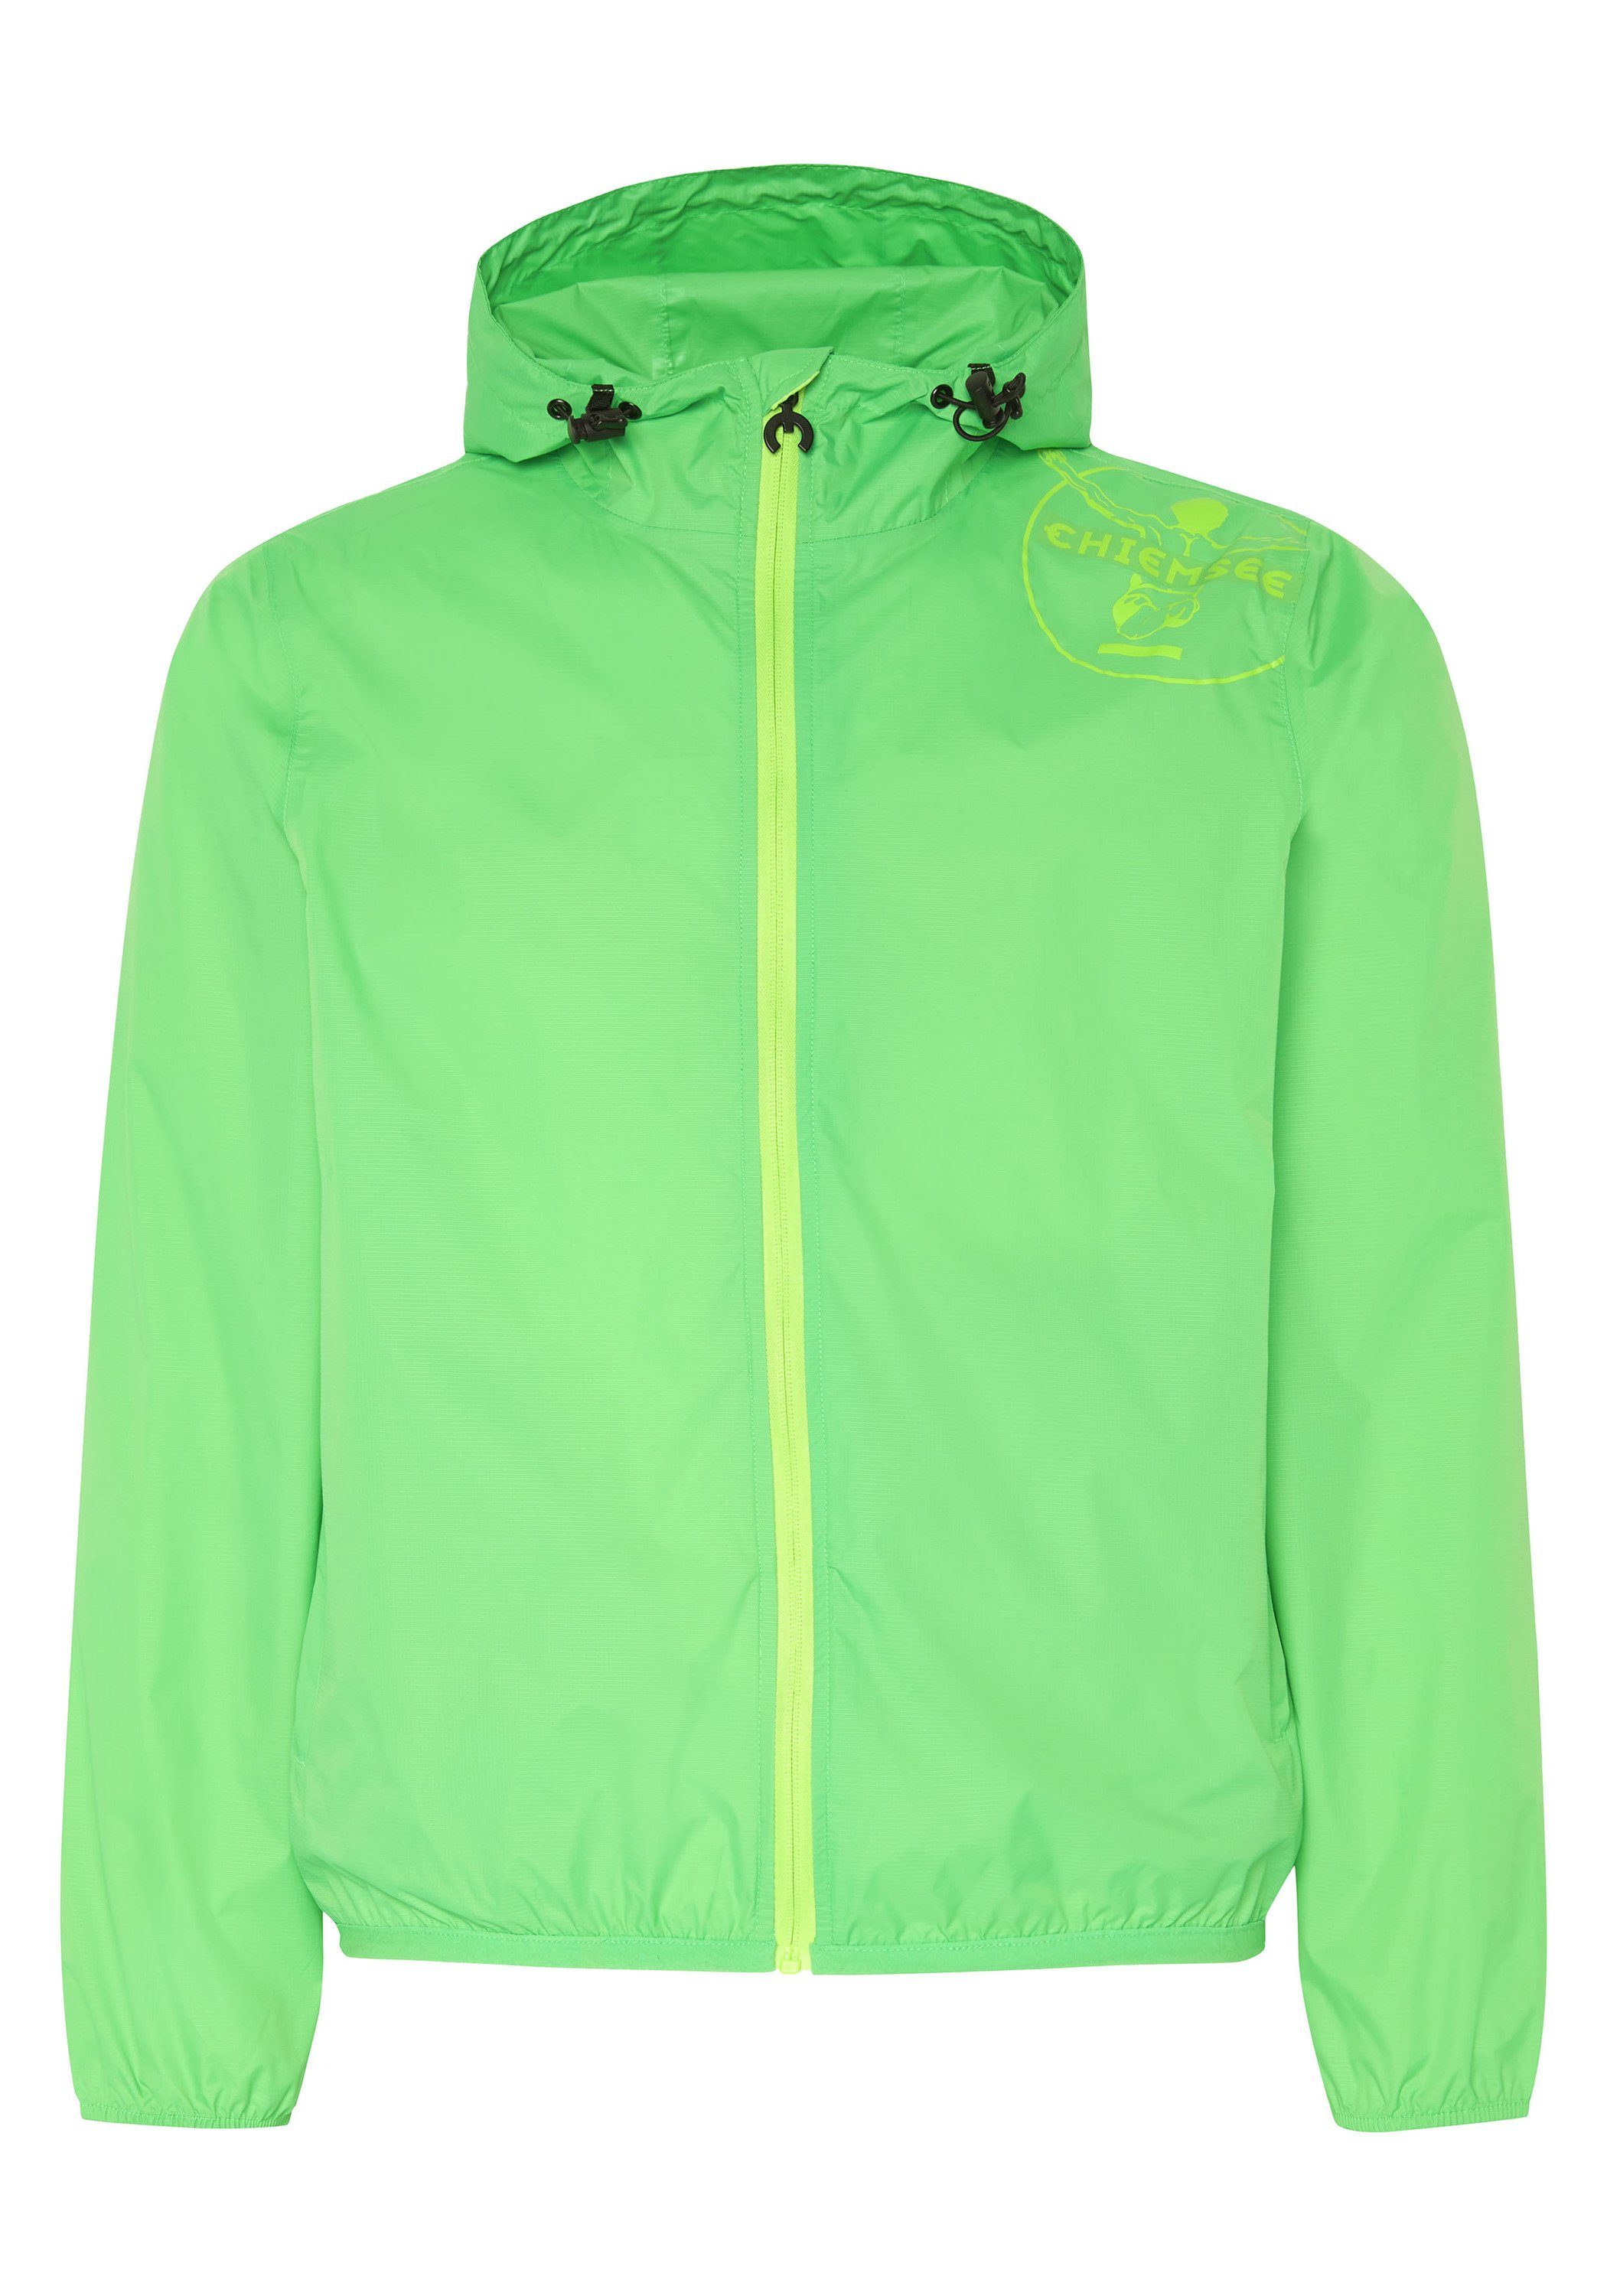 Chiemsee Outdoorjacke Regenjacke mit Jumper-Motiv und Taschen-Funktion 1 grün | Jacken